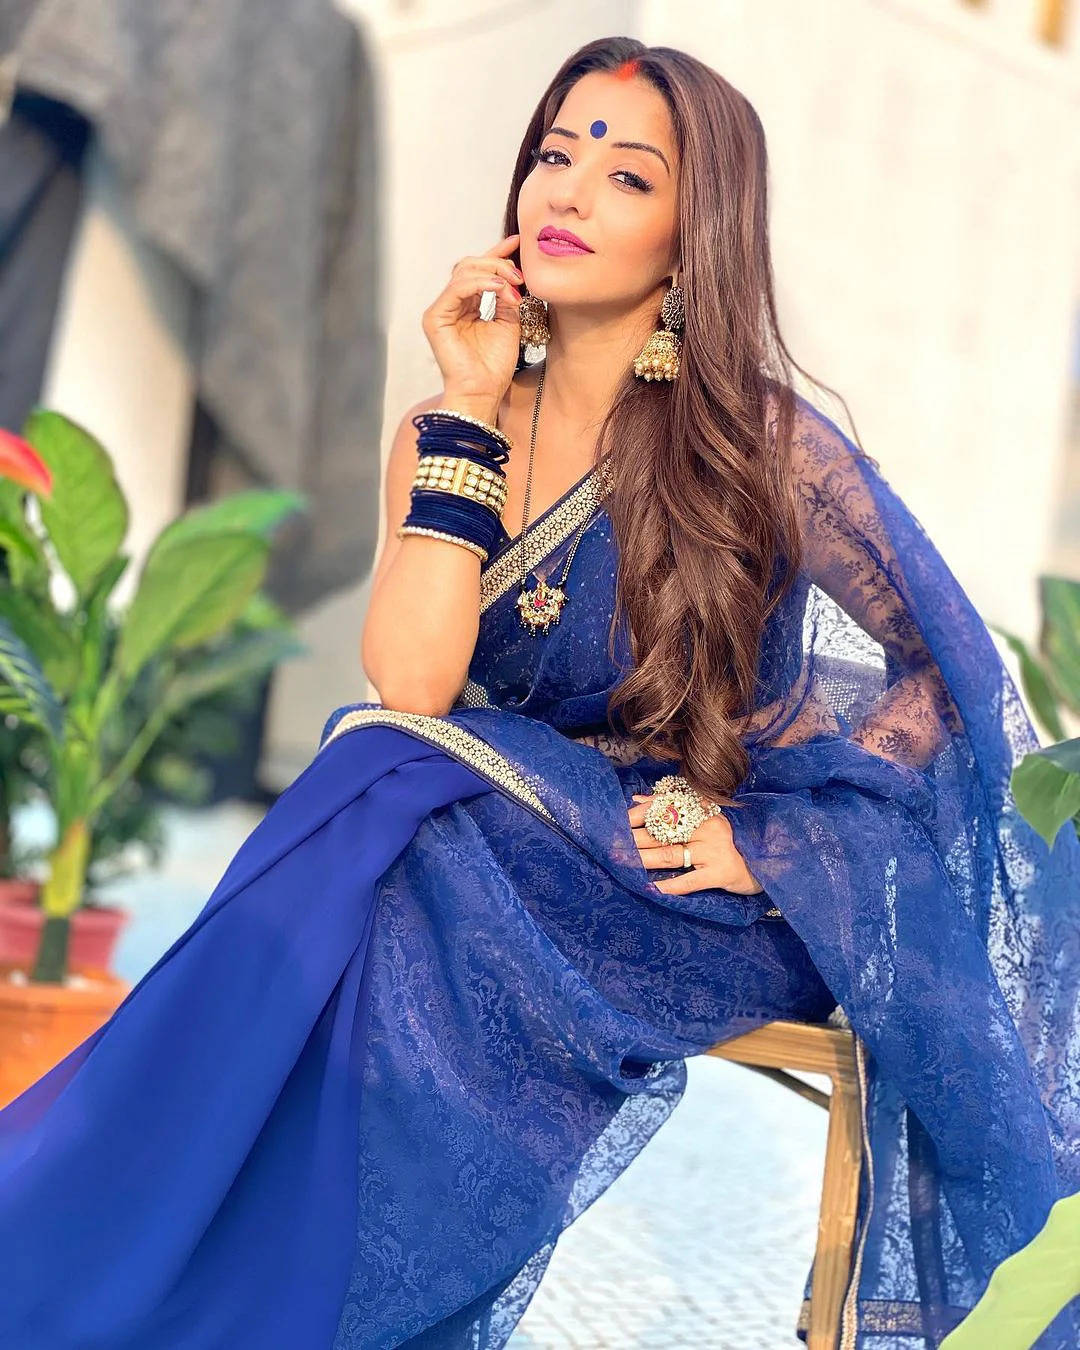 Bhojpurischauspielerin Im Blauen Kleid Wallpaper